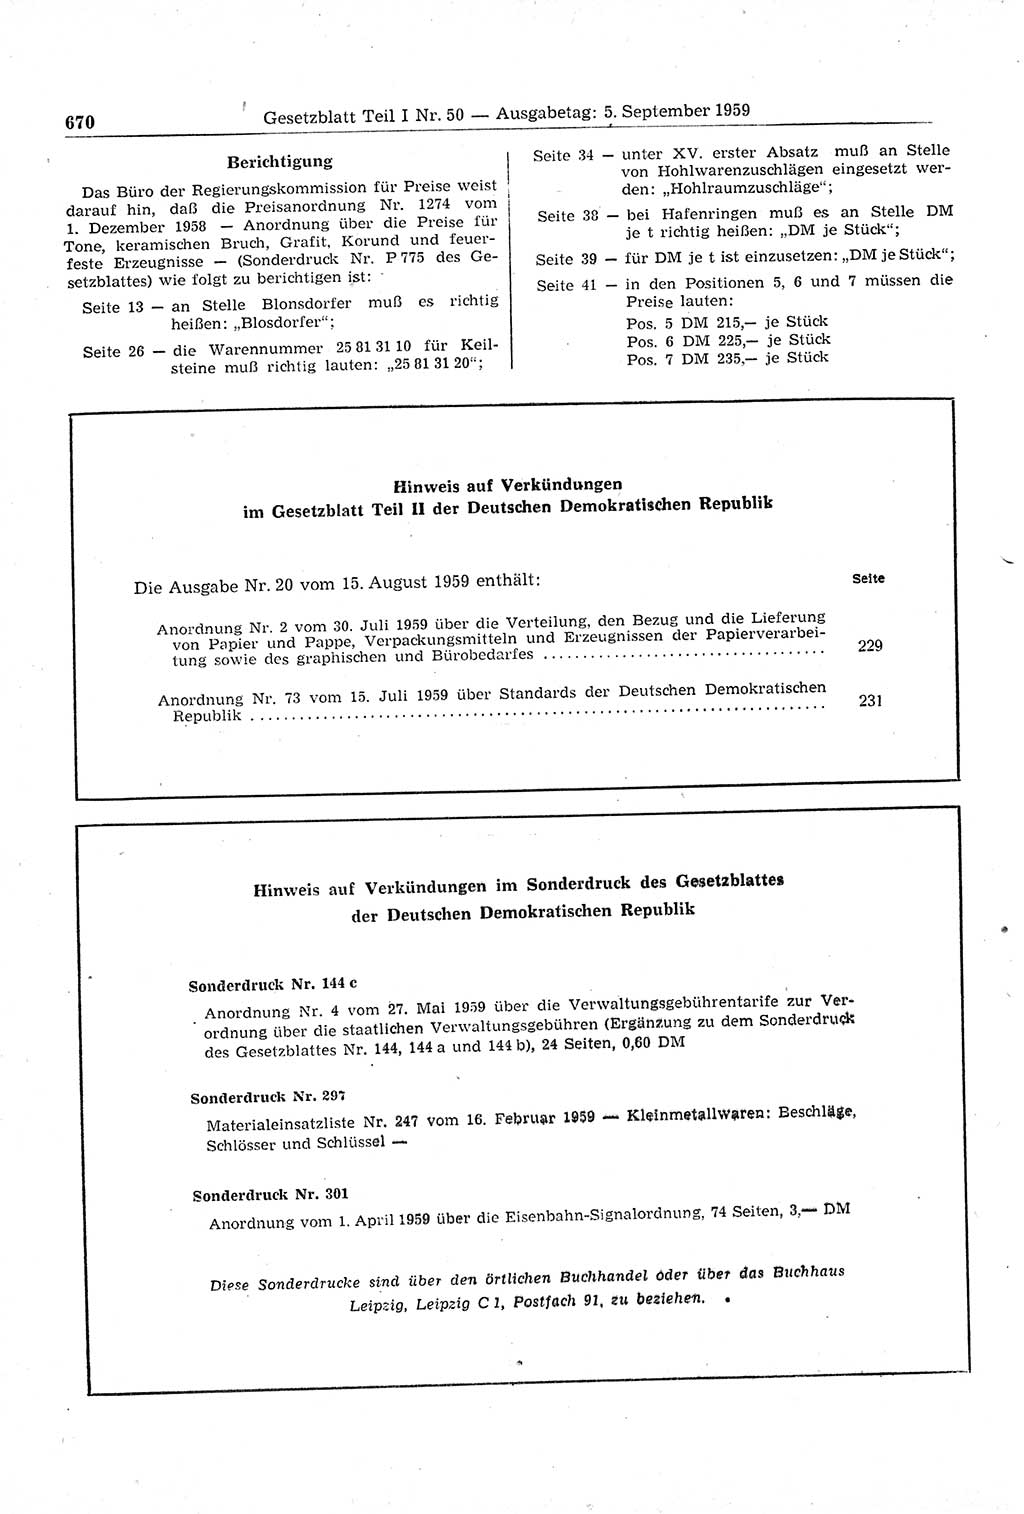 Gesetzblatt (GBl.) der Deutschen Demokratischen Republik (DDR) Teil Ⅰ 1959, Seite 670 (GBl. DDR Ⅰ 1959, S. 670)